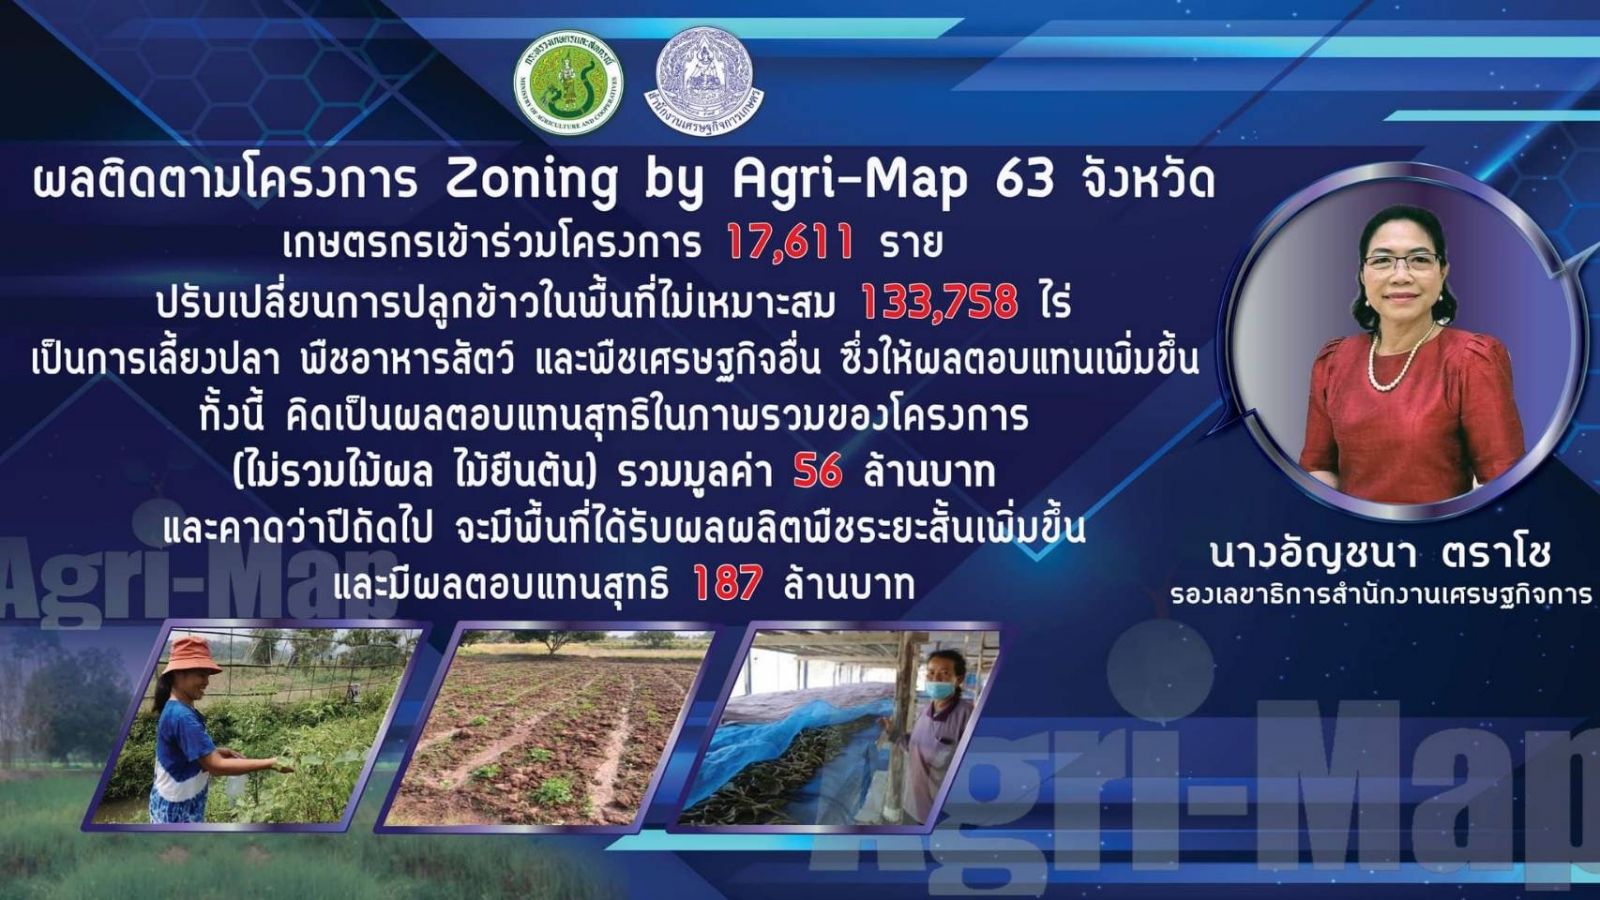 สศก. โชว์ผล Zoning Agri-Map ช่วยเพิ่มรายได้ในครัวเรือนให้แก่เกษตรกร